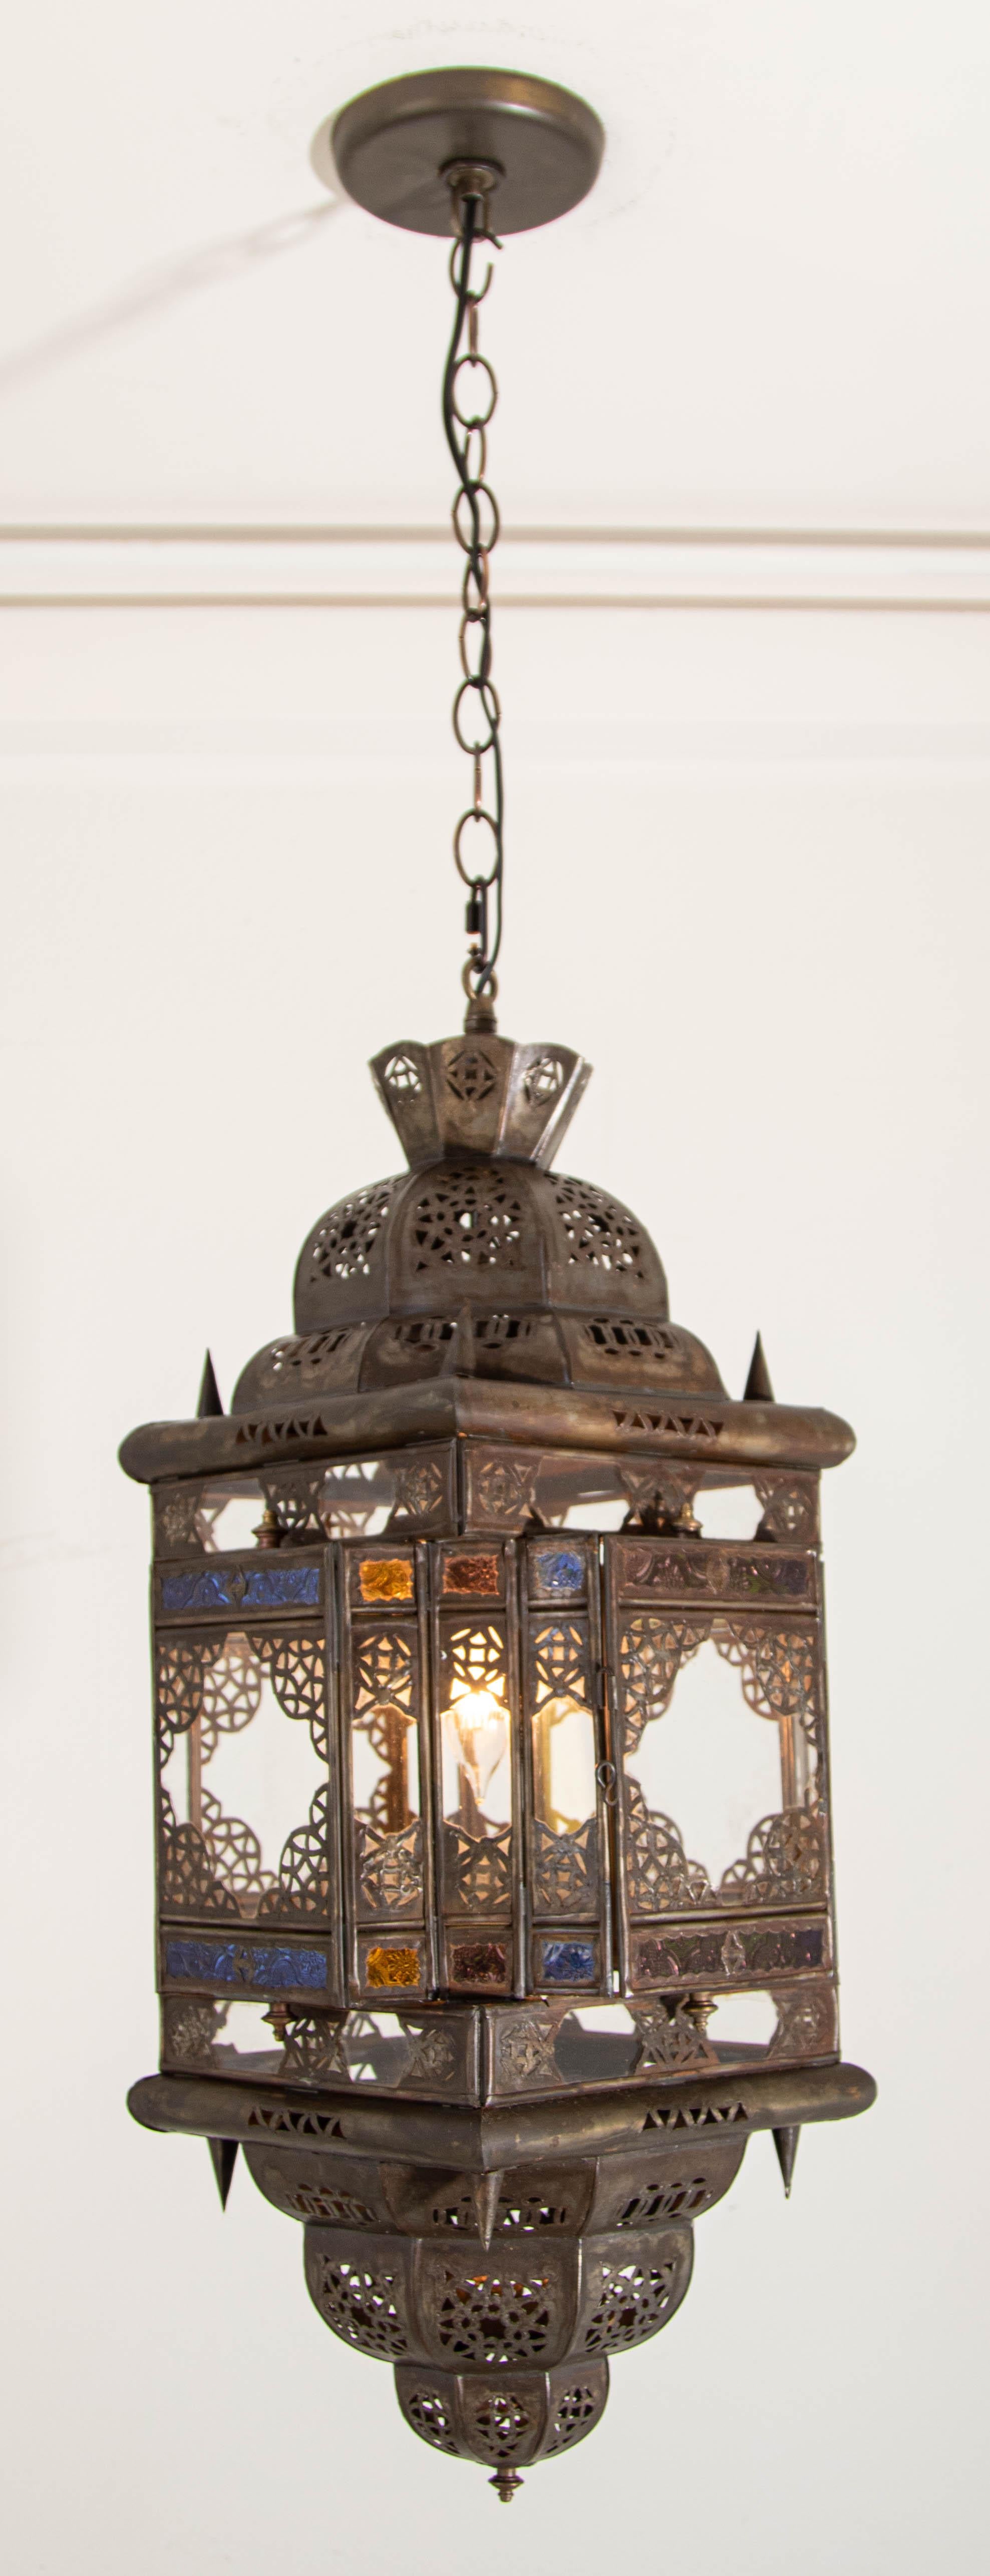 Lanterne suspendue marocaine vintage en verre clair et multicolore fabriquée à Marrakech
Pendentif lanterne en verre clair et multicolore de forme carrée, fabriqué à la main par des artisans marocains à Marrakech.
Le métal est découpé à la main dans